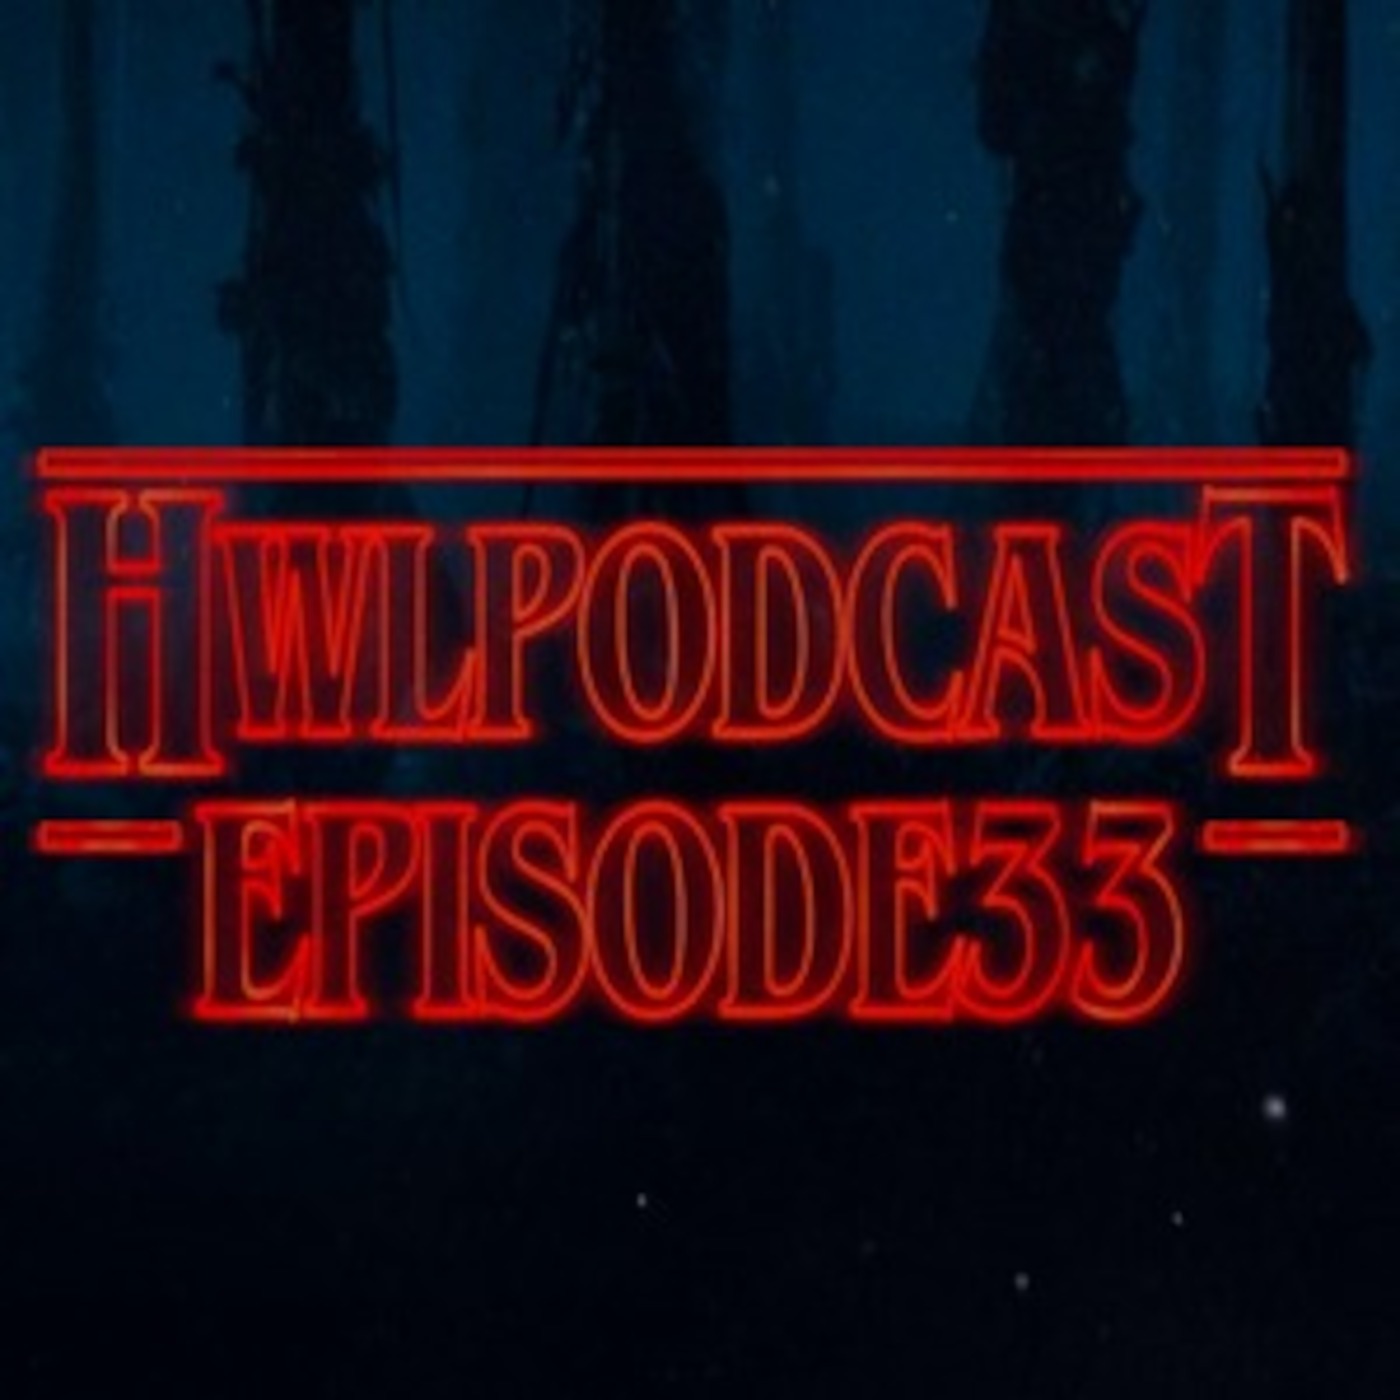 Episode 33: Hallowiffle 3.0